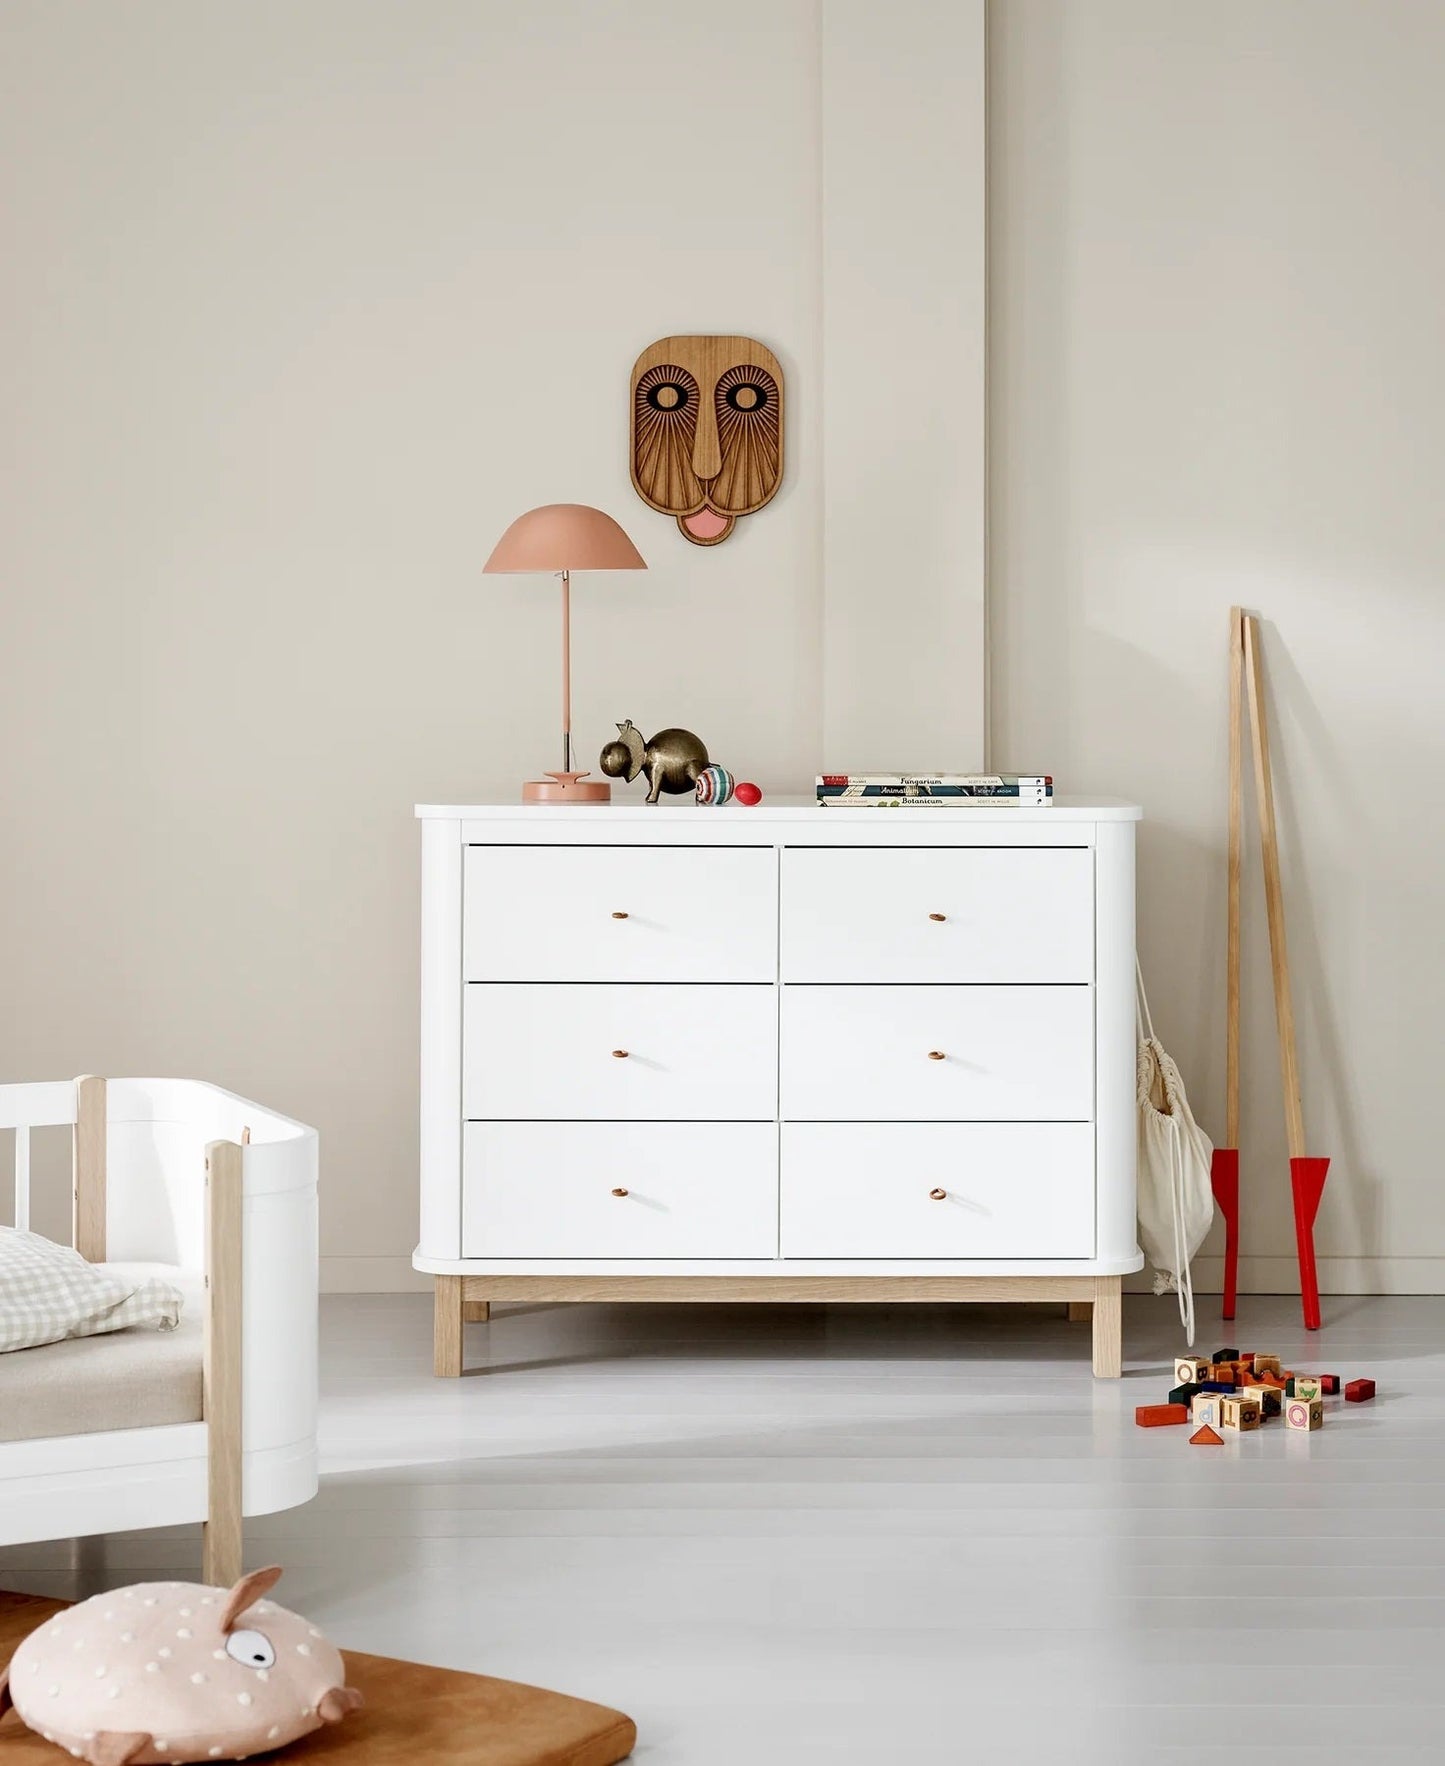 Oliver Furniture Wood Dresser - 6 Drawers - White/Oak